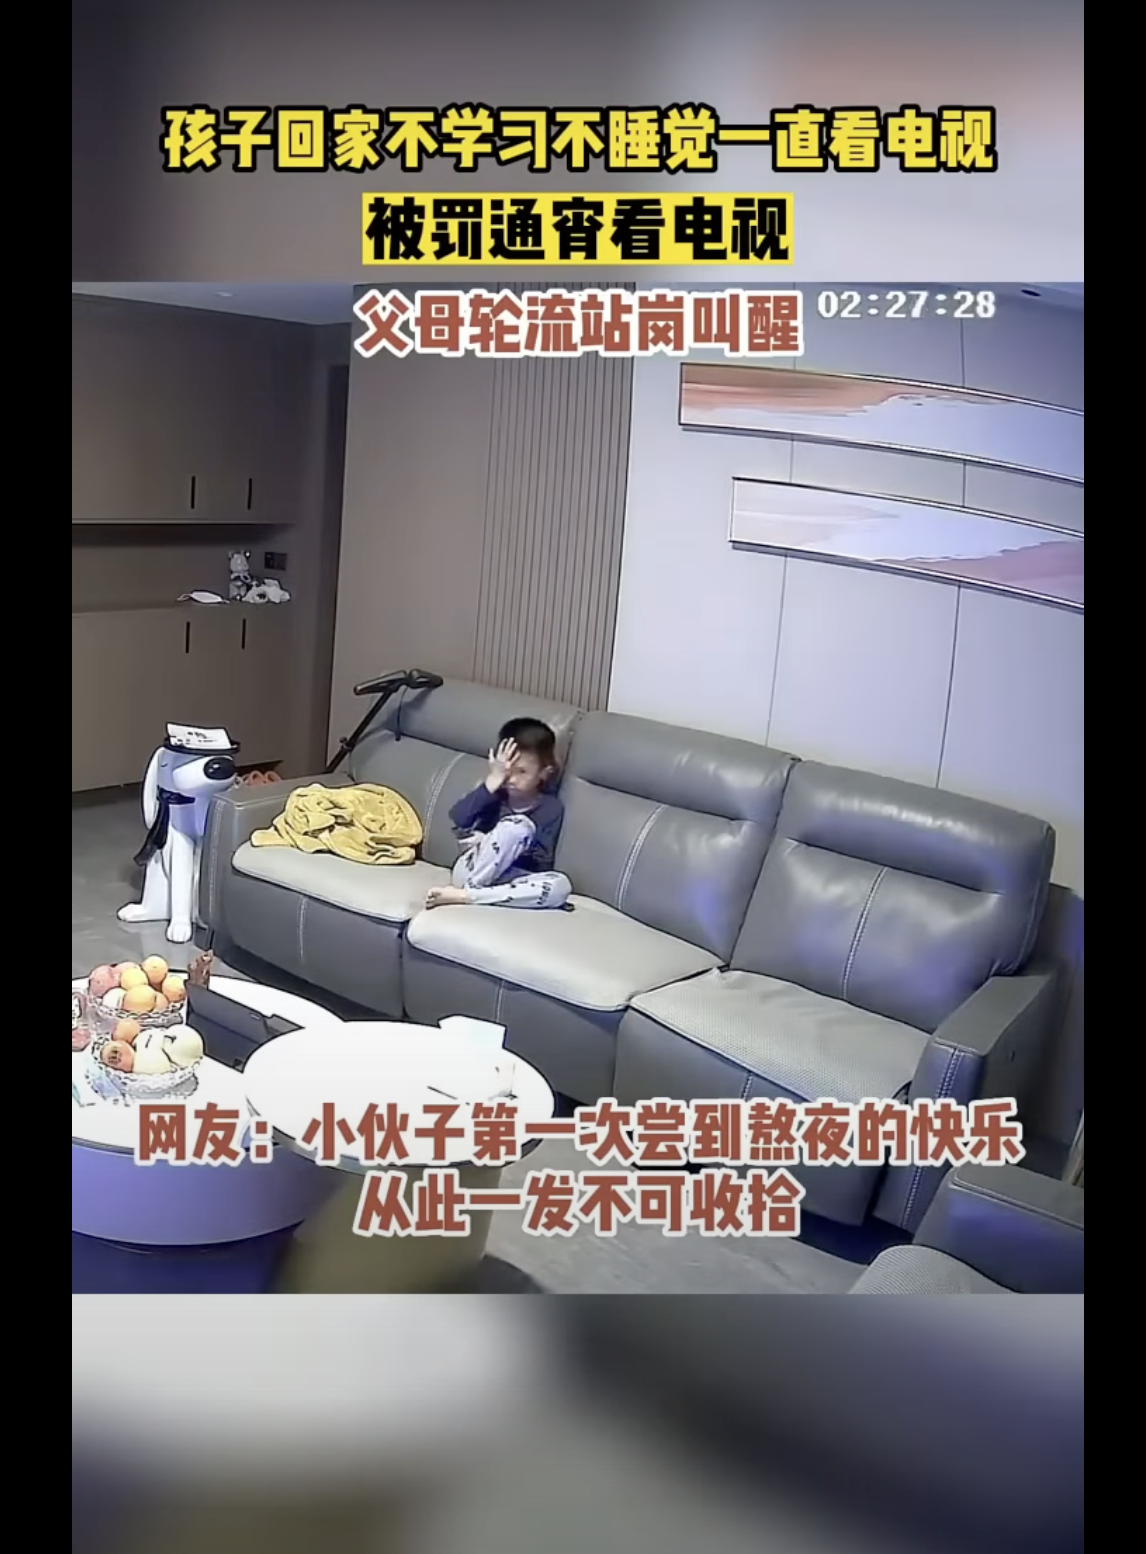 El niño aparece sentado en el sofá de la sala. | Foto: youtube.com/趣事大赏